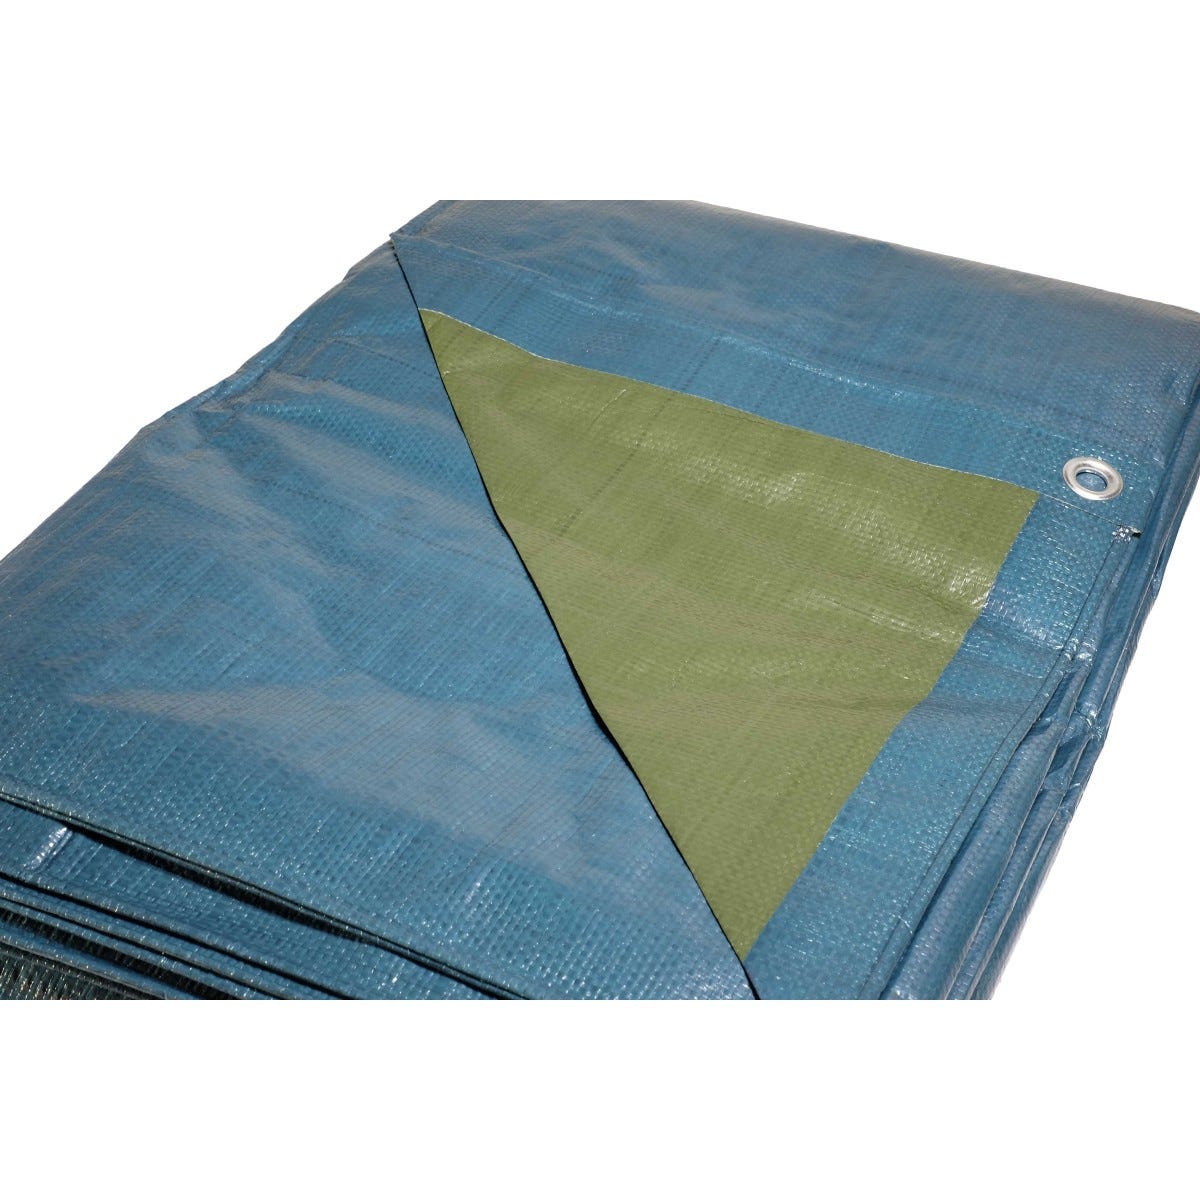 Bâche plastique 5x8 m bleue et verte 150g/m² - bâche de protection polyéthylène 4